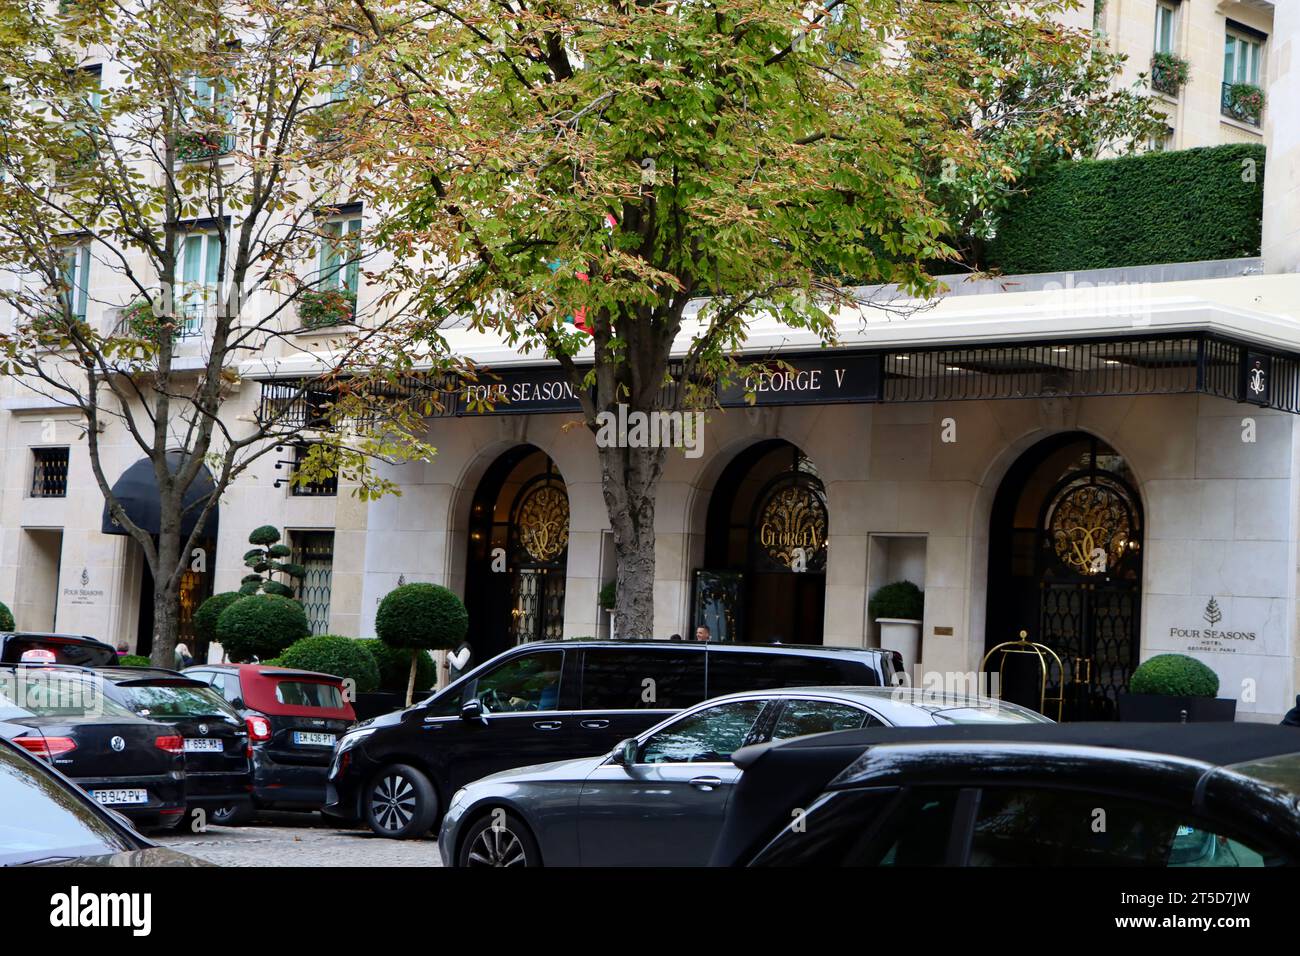 Four Seasons Hotel George V sur Avenue George V à Paris, France Banque D'Images